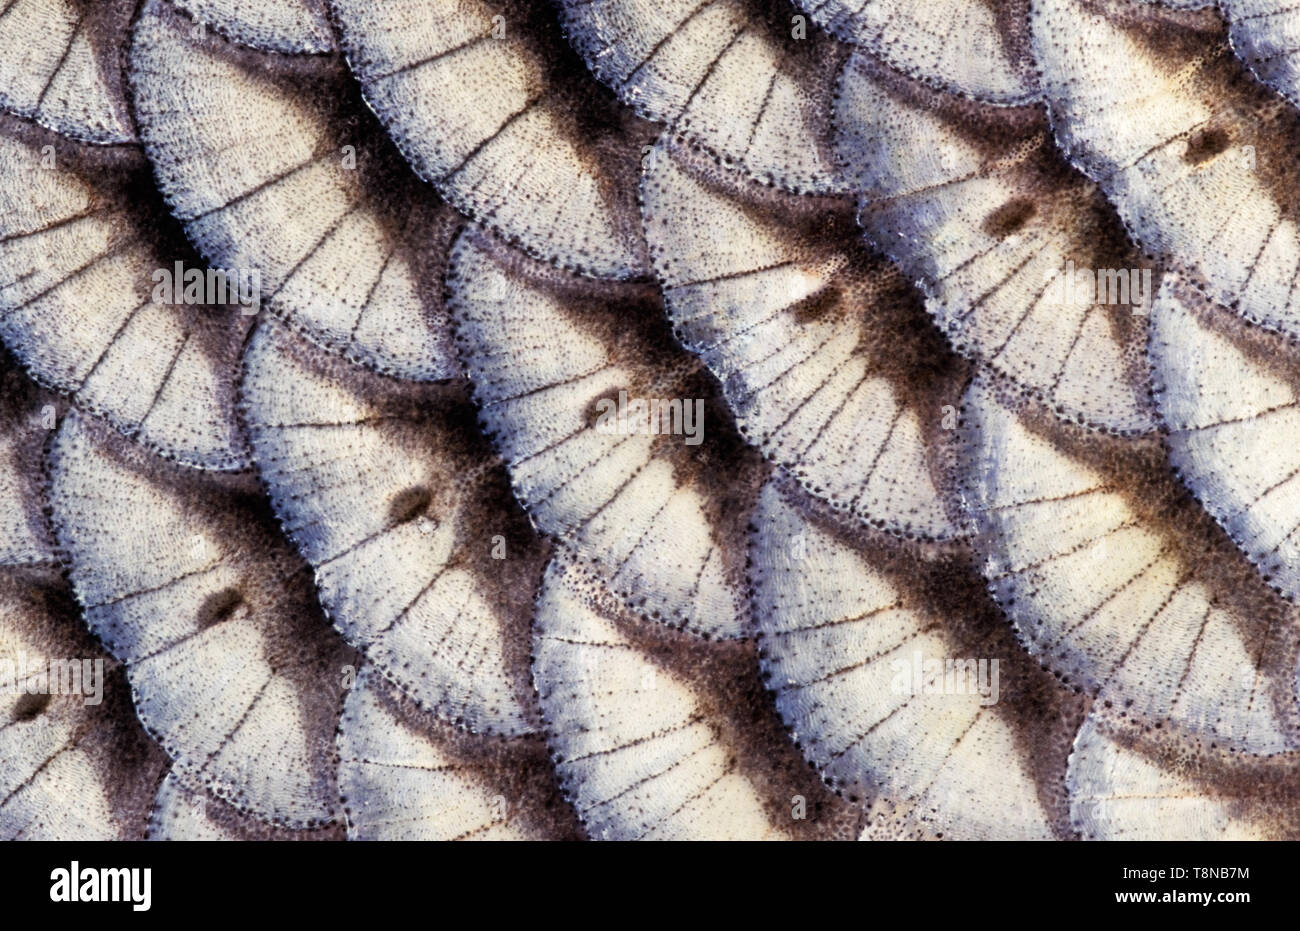 Fisch (Ide leuciscus idus) Skala close-up. Die Reihe der Seitenlinie Skalen laufen durch das Bild. Stockfoto